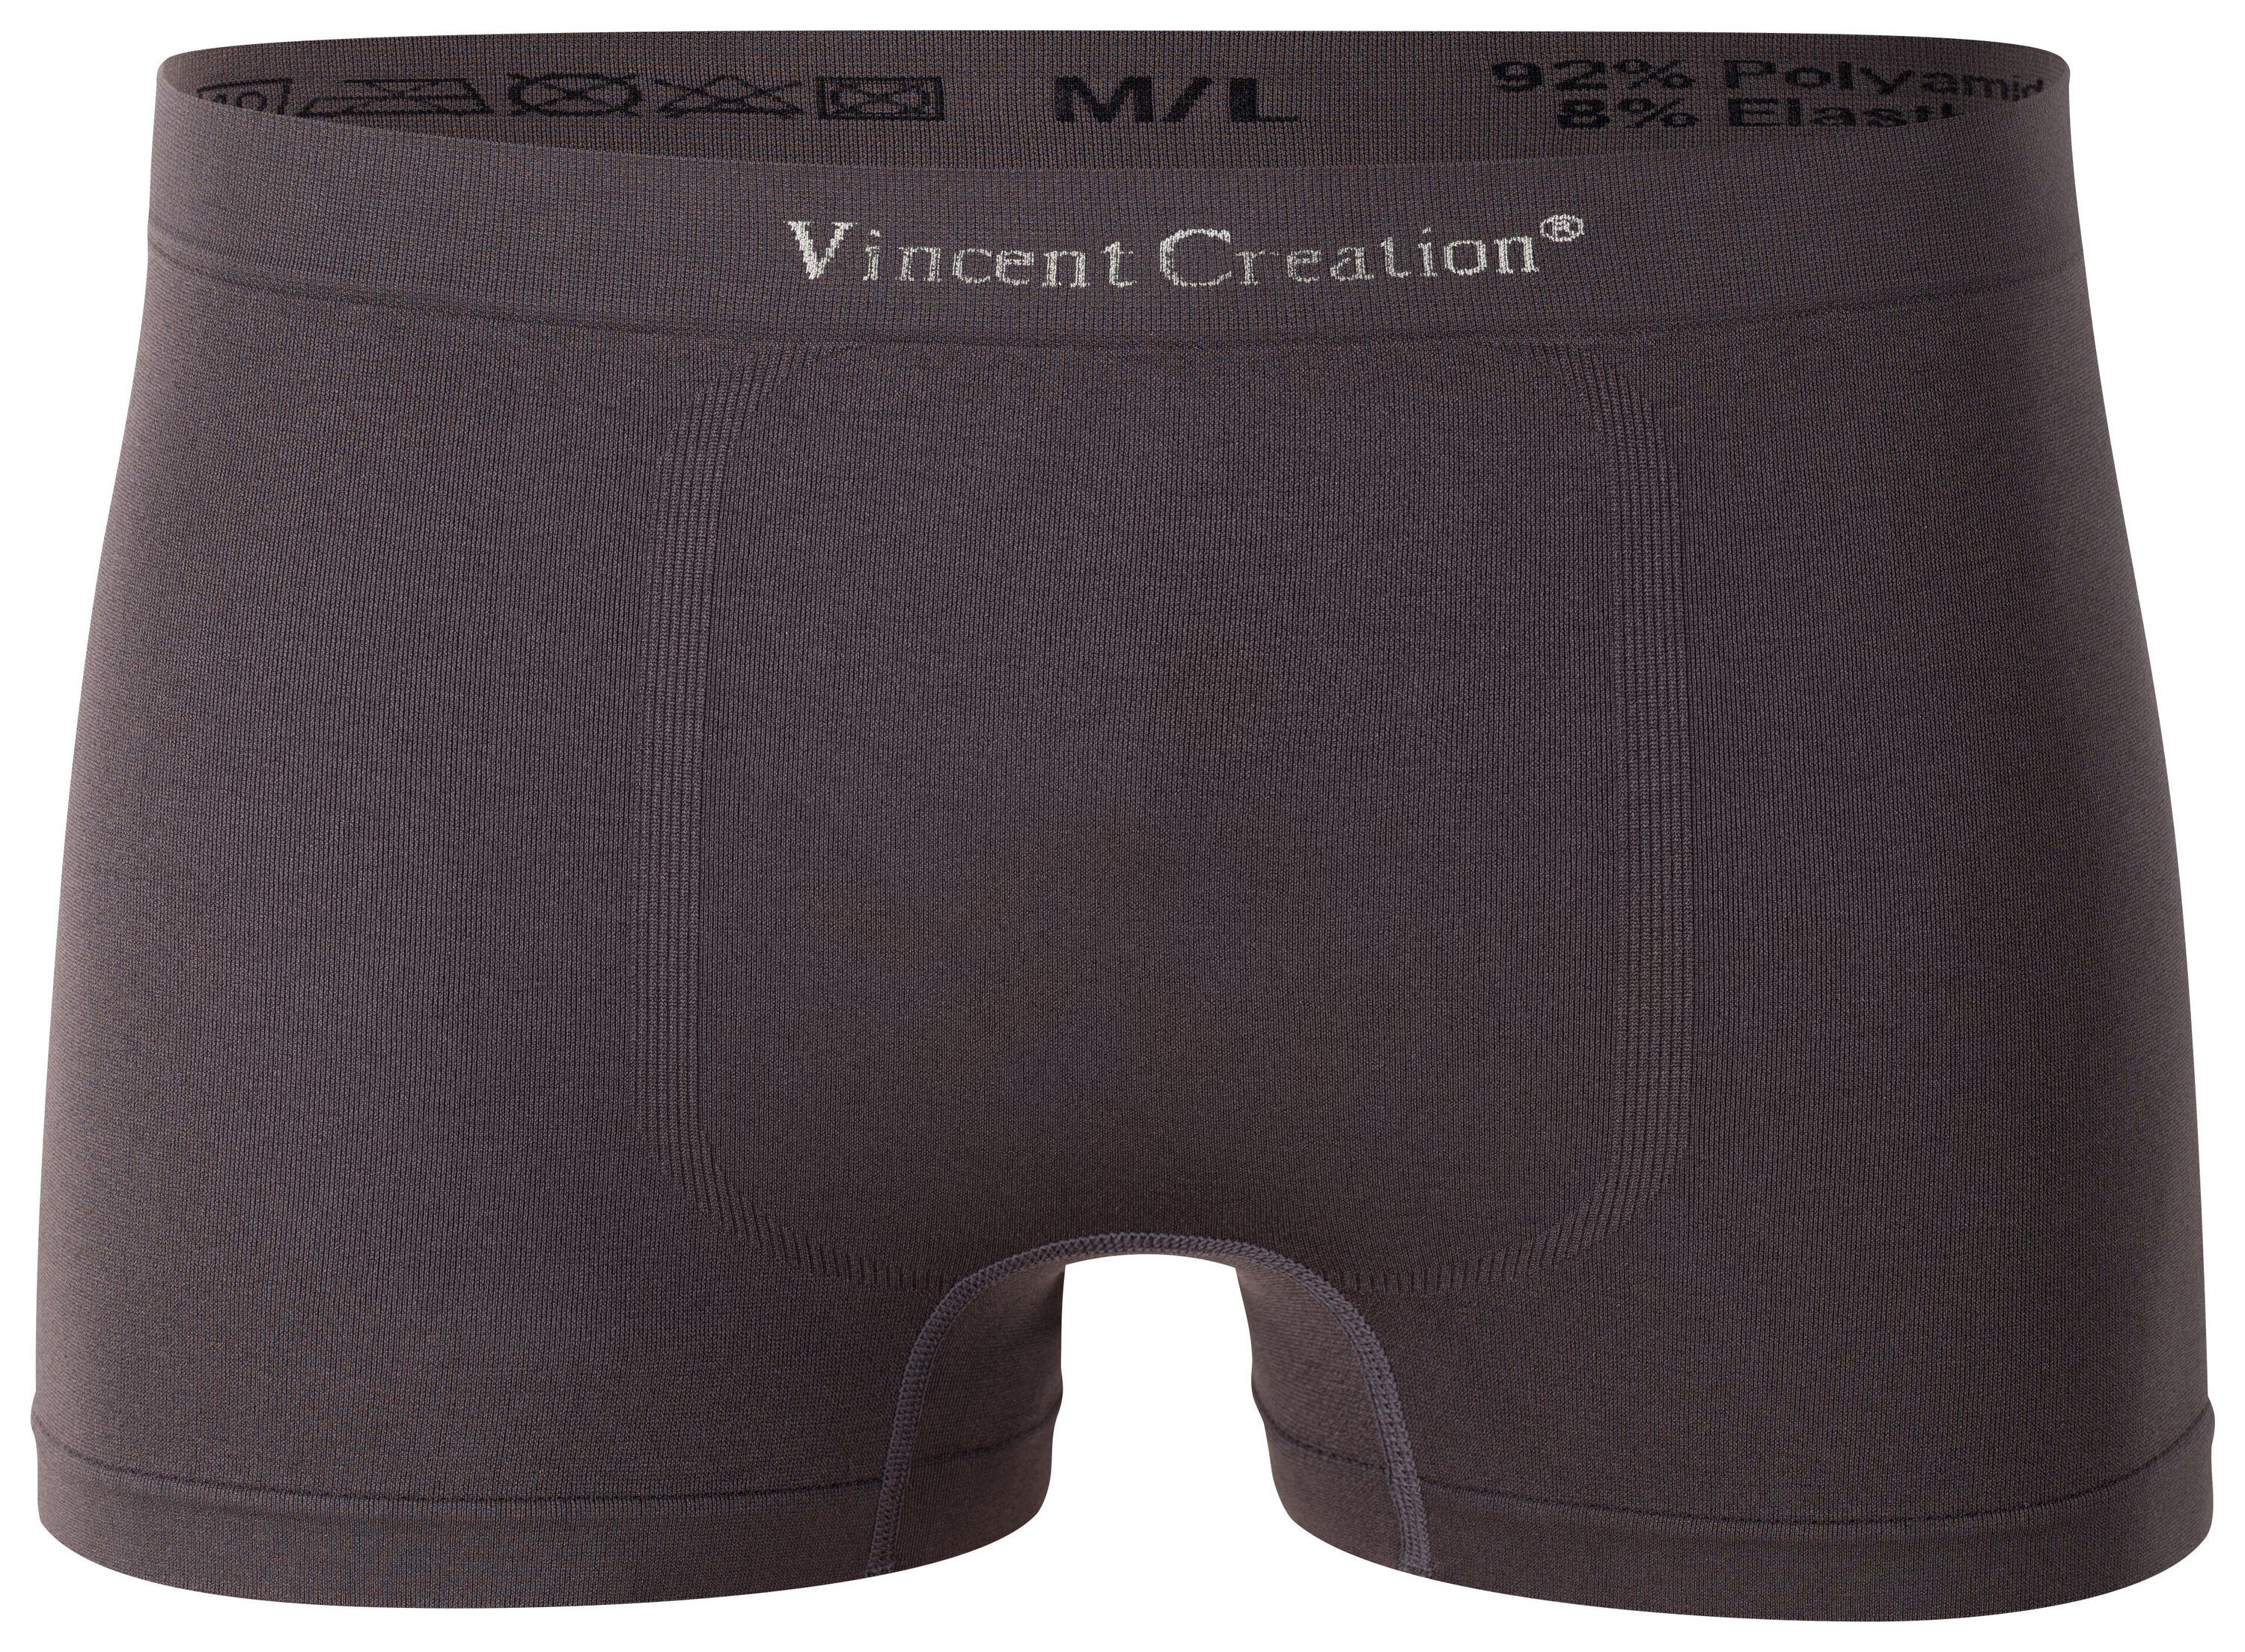 Boxershorts Creation® Vincent - Pack, Microfaser-Qualität Microfaser Seamless weiche 12er (12-St) schw/khaki/grau